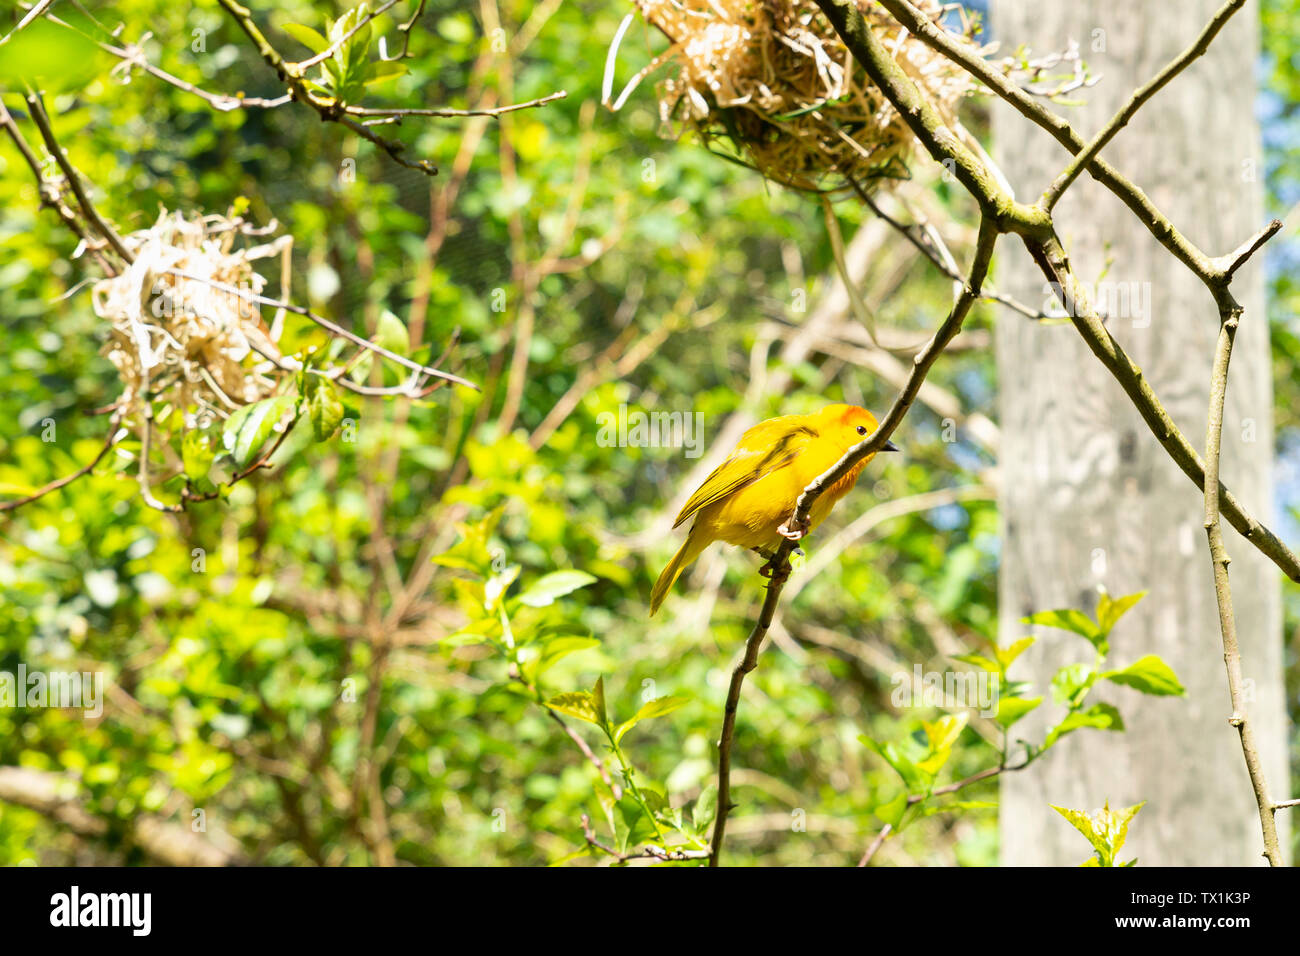 Close-up de un varón soltero taveta ploceus castaneiceps Weaver, dorado, con un nido colgando de las ramas de un árbol Foto de stock